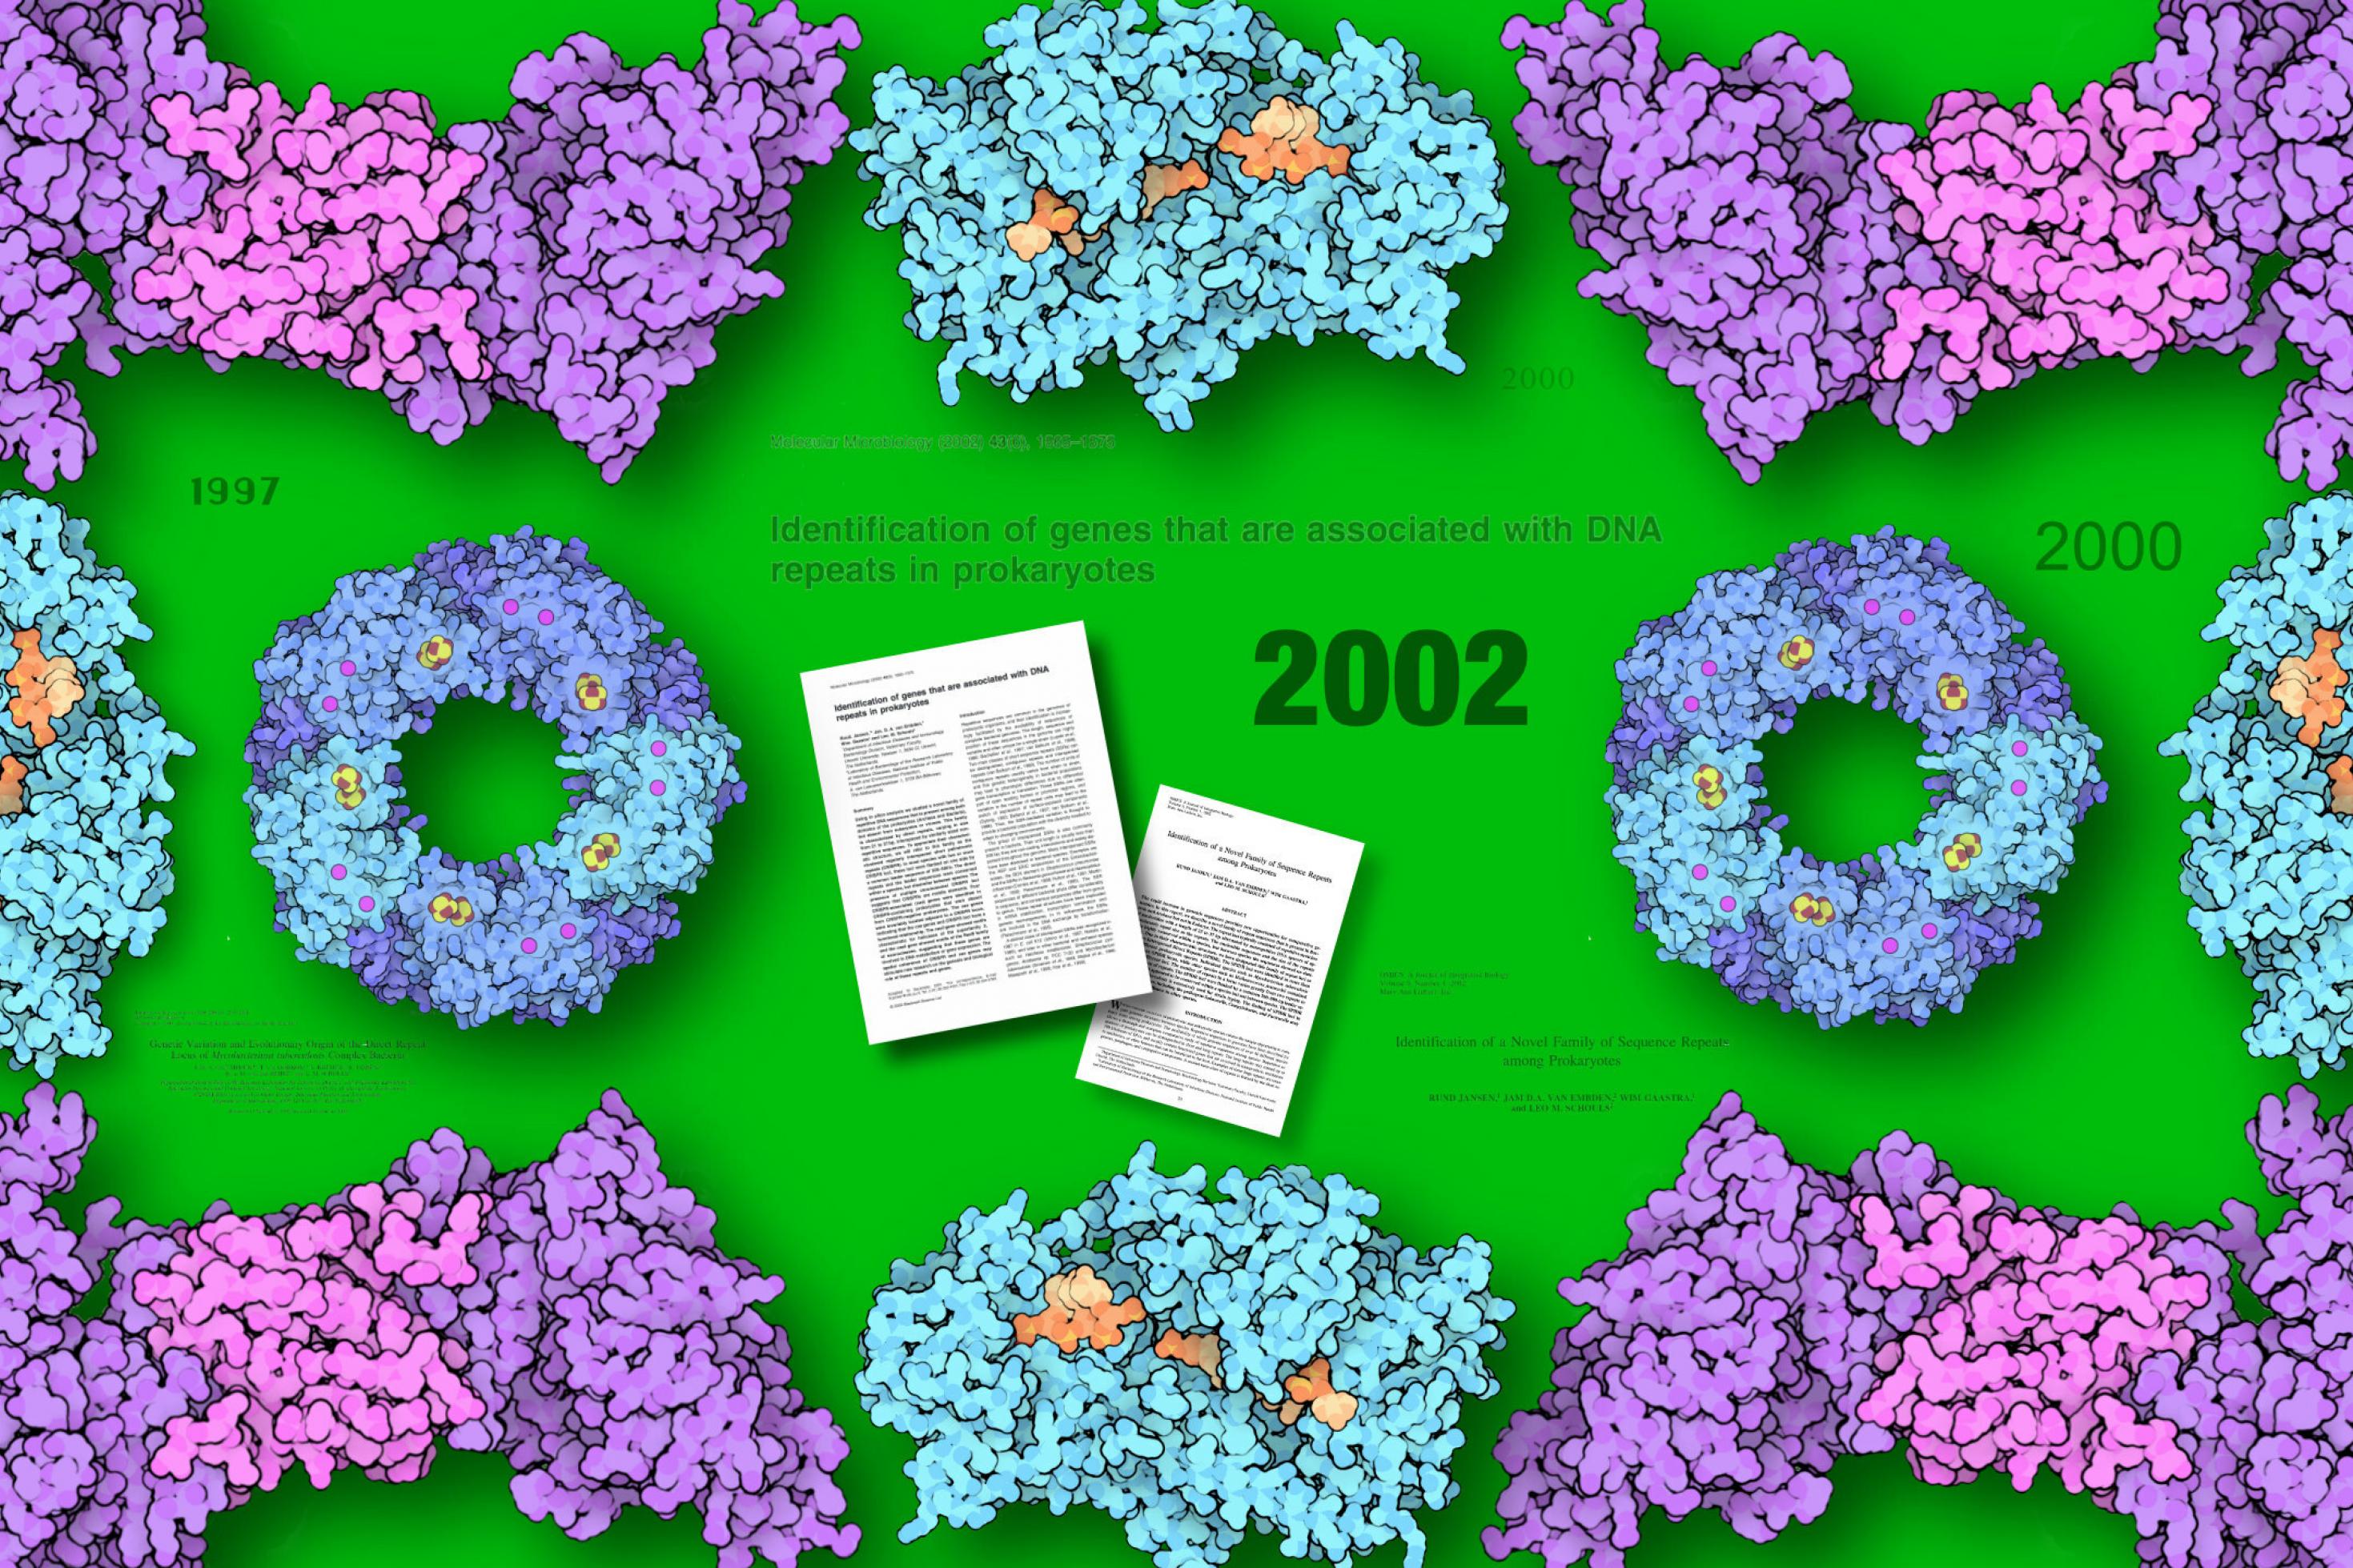 Verschiedene Cas-Proteine Cas1 bis Cas4 ornamental symmetrisch vor grünem Hintergrund platziert und  in der Mitte die Titel und die Titelseiten der beiden Fachartikel, die Ruud Jansen 2002 veröffentlicht hat.